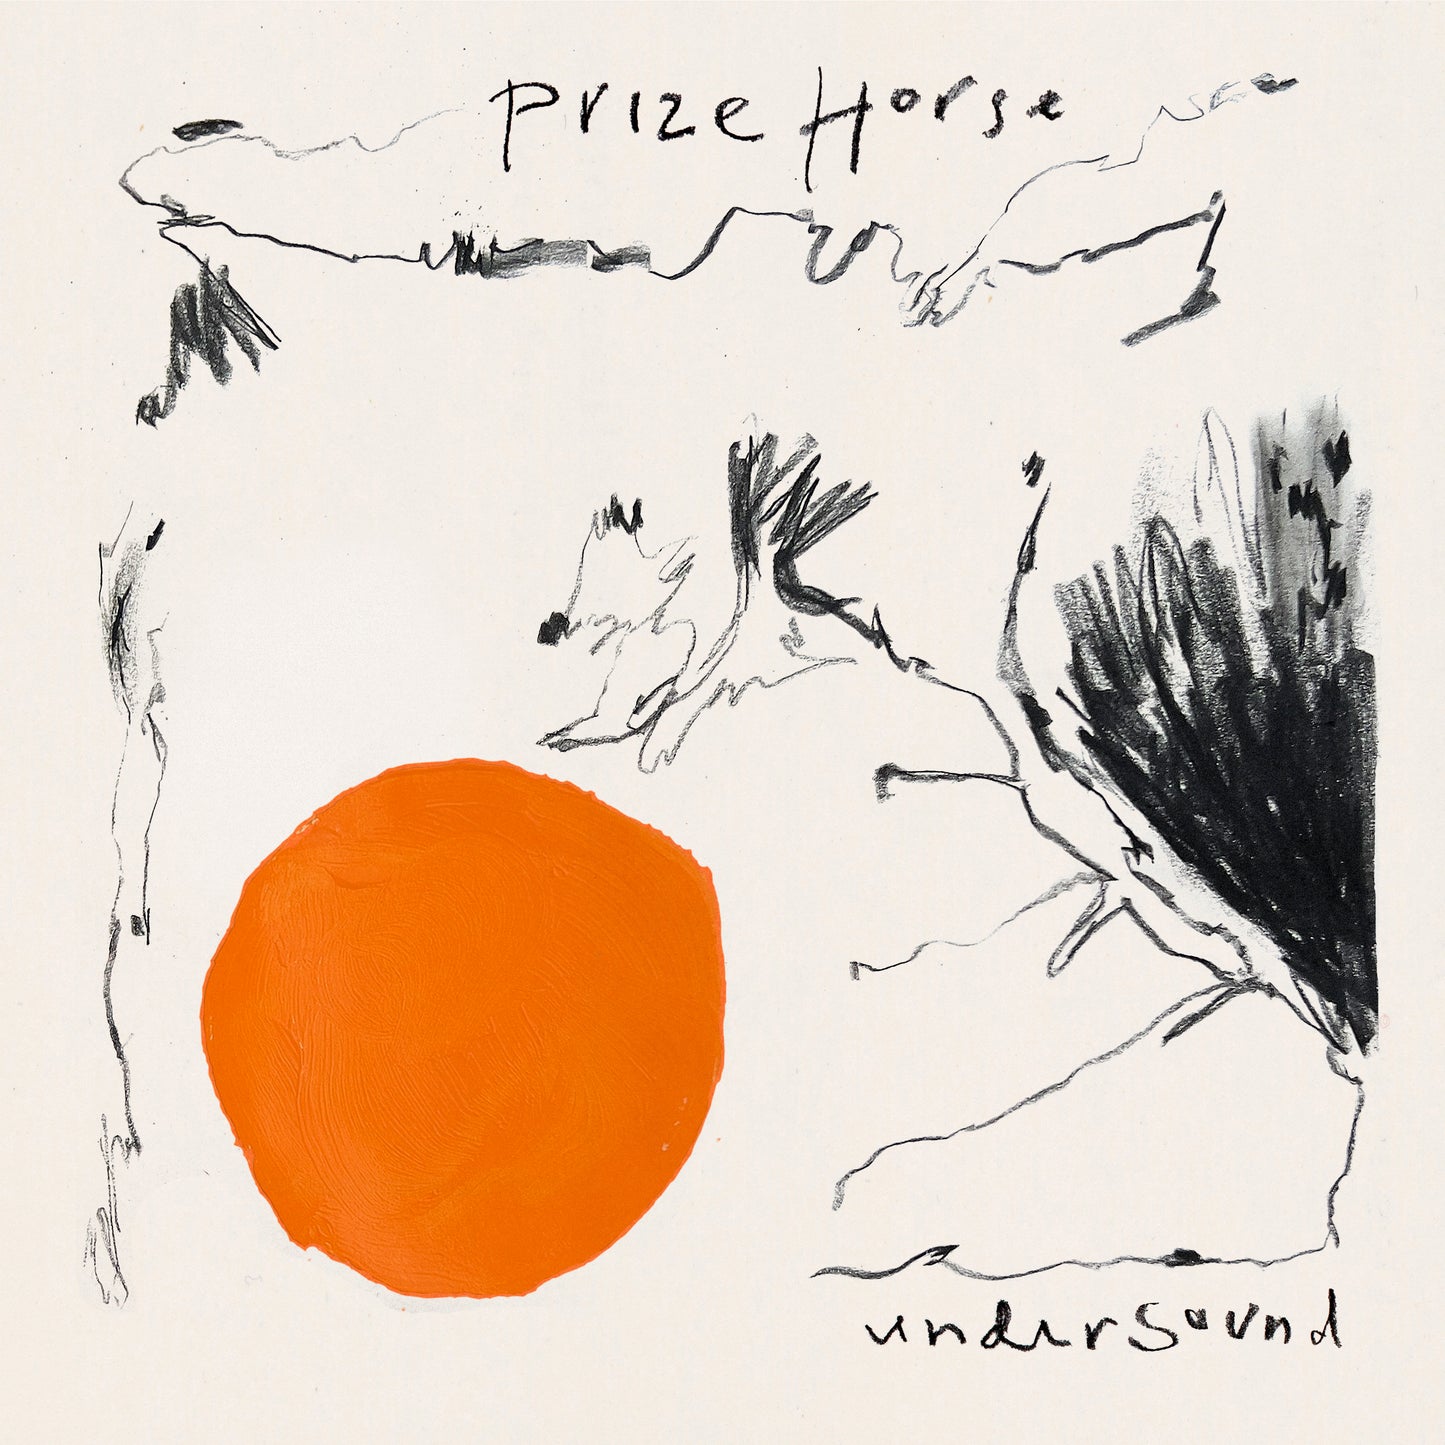 Prize Horse "Under Sound" LP